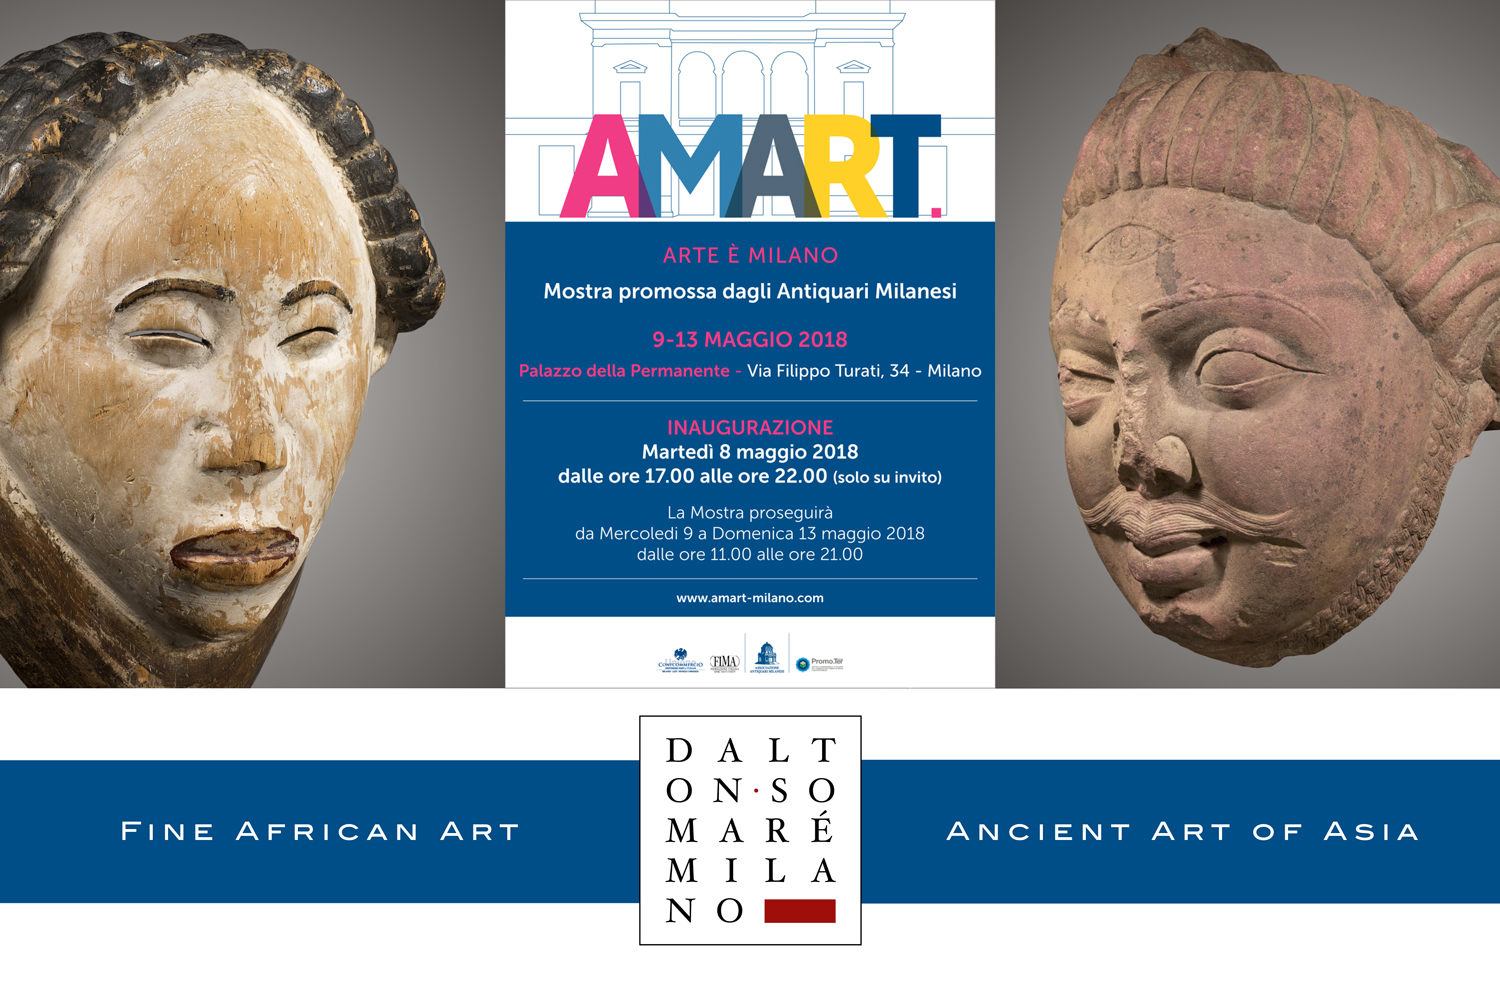 Amart Milano 2018 - Save the Date Dalton Somare - Arte primitiva Africana e Arte Classica Orientale - Statue in Legno e pietra